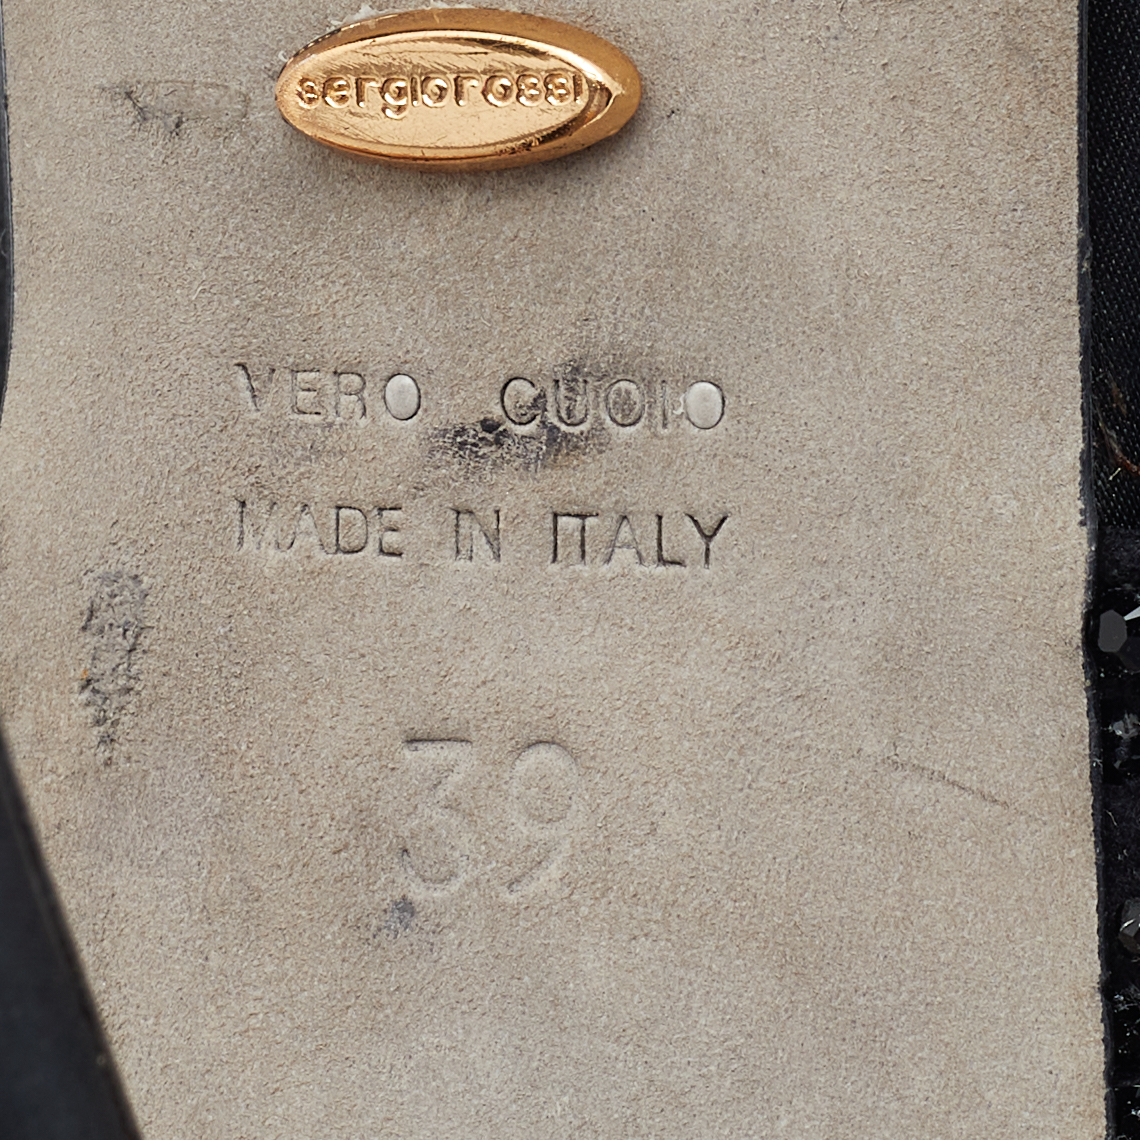 Sergio Rossi Black Satin Embellished  Ankle Strap Sandals Size 39